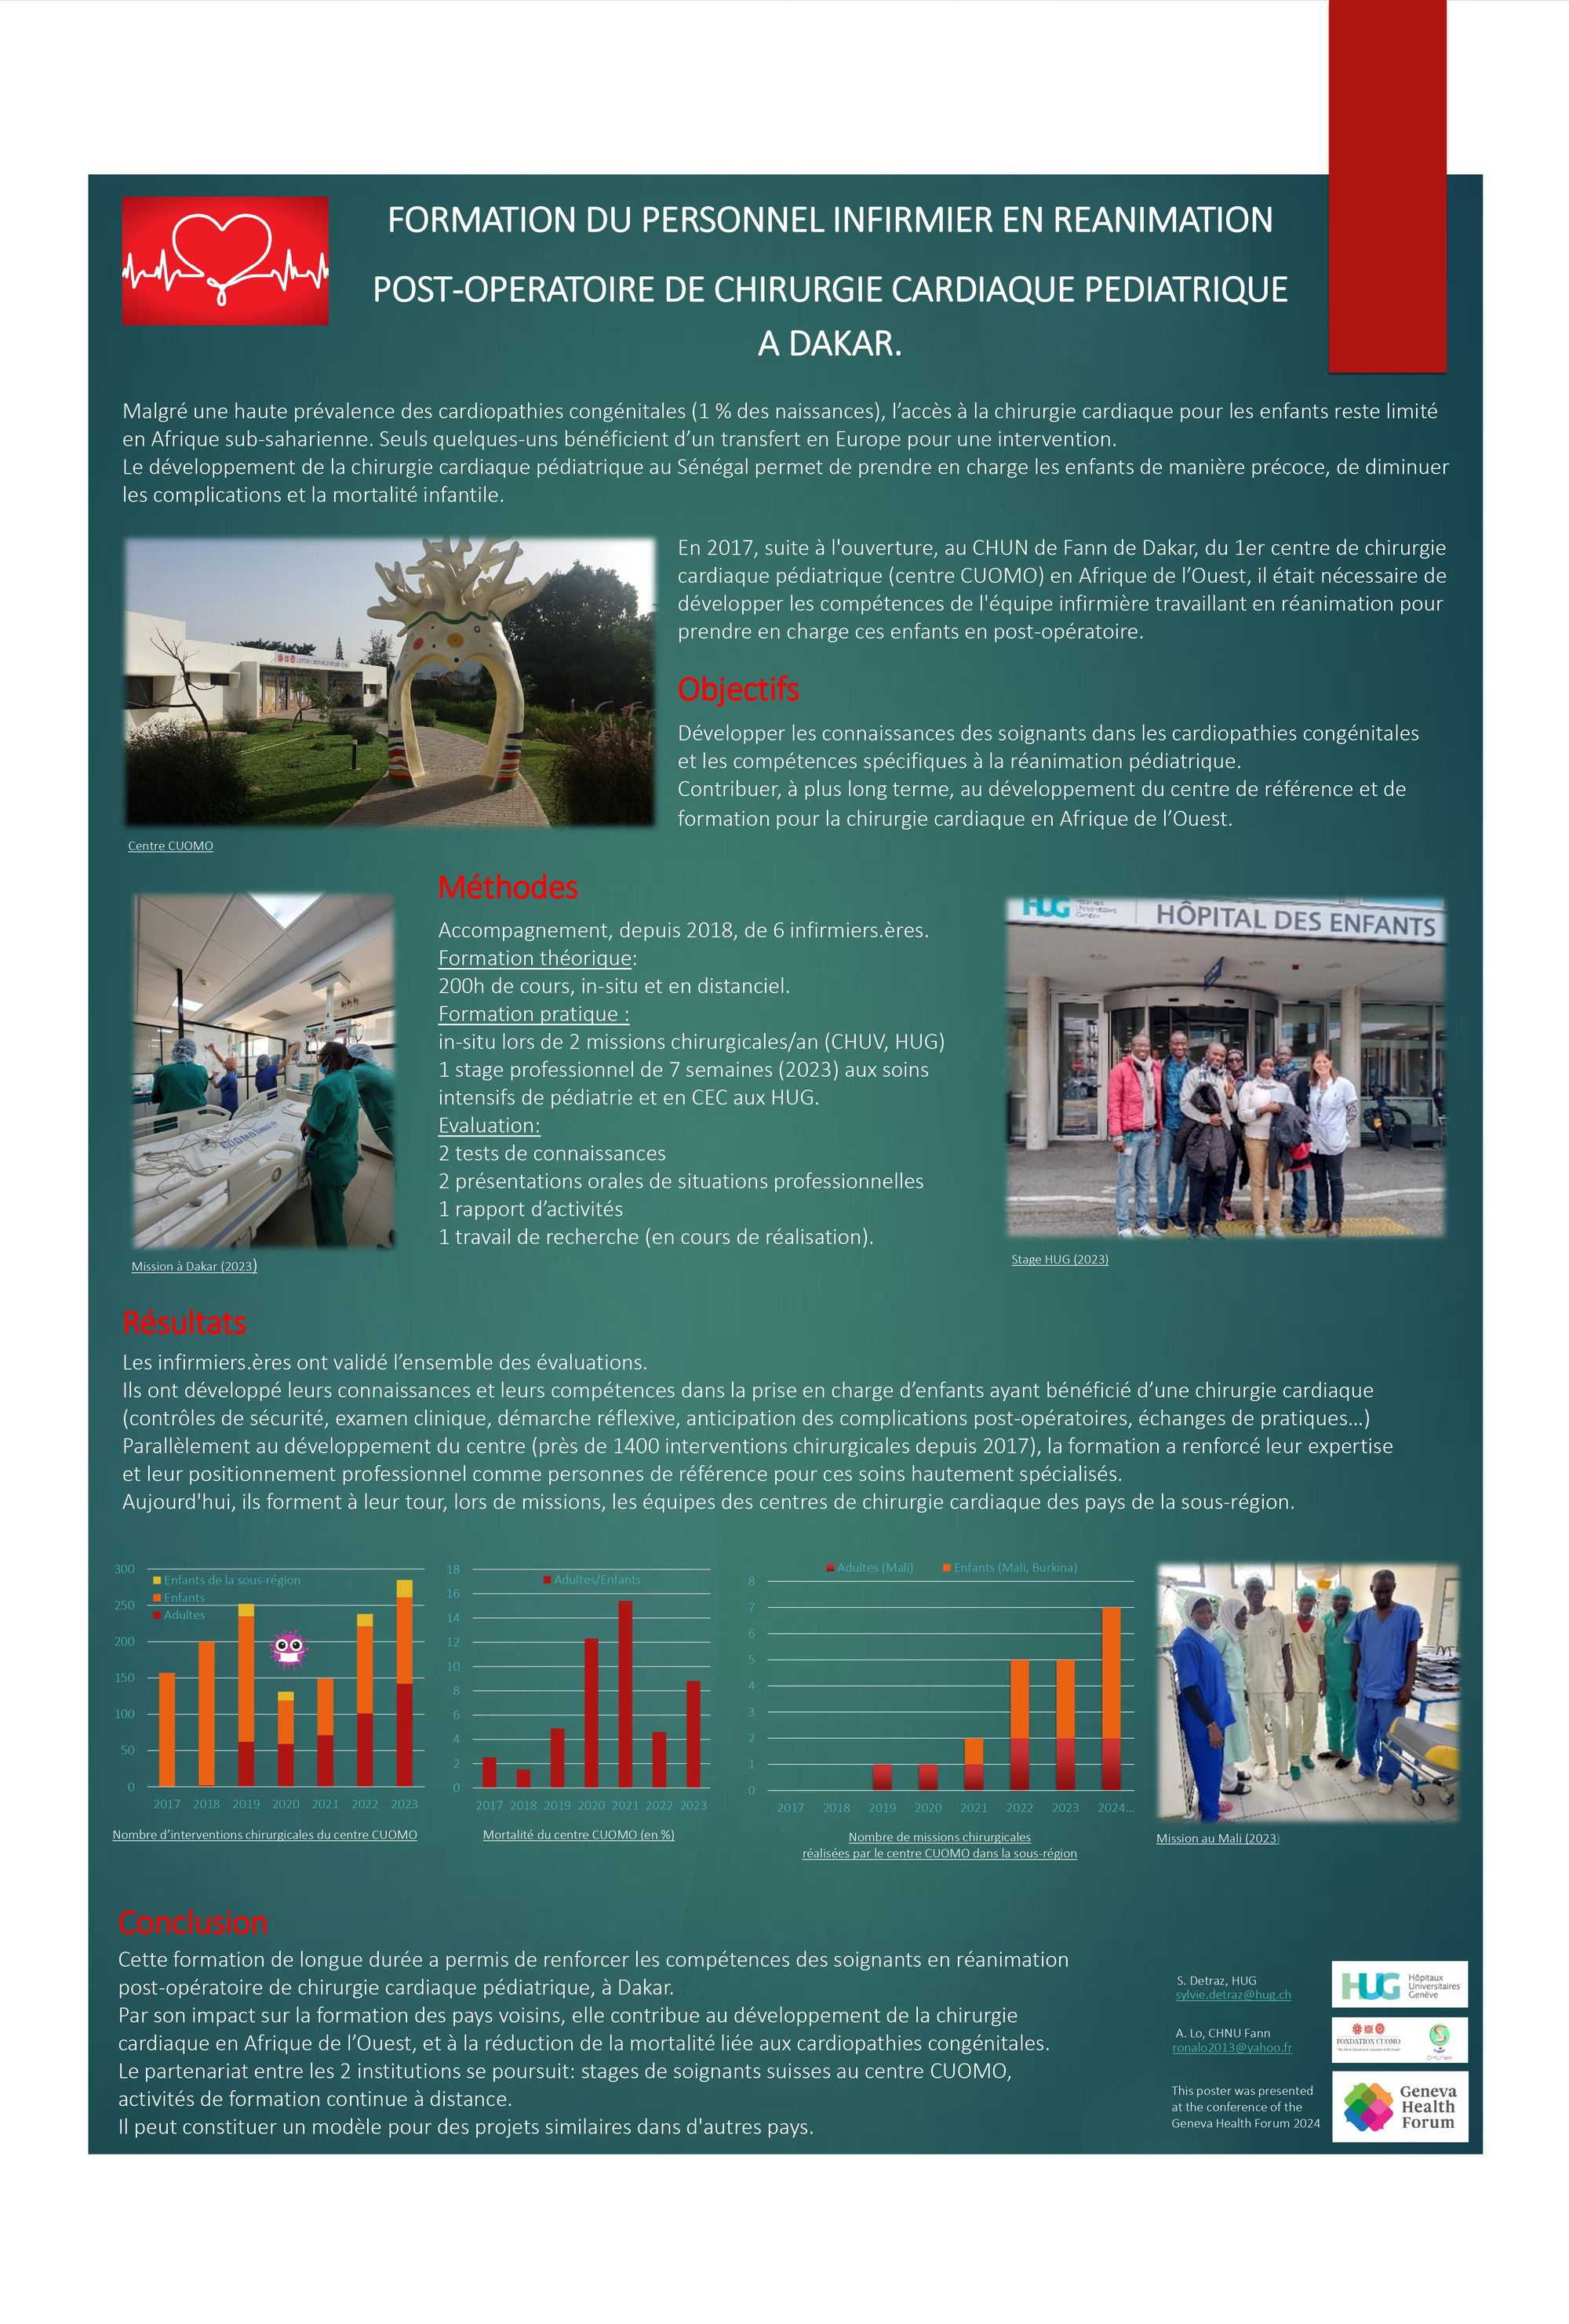 Formation des soignants en réanimation post-opératoire de chirurgie cardiaque pédiatrique à Dakar